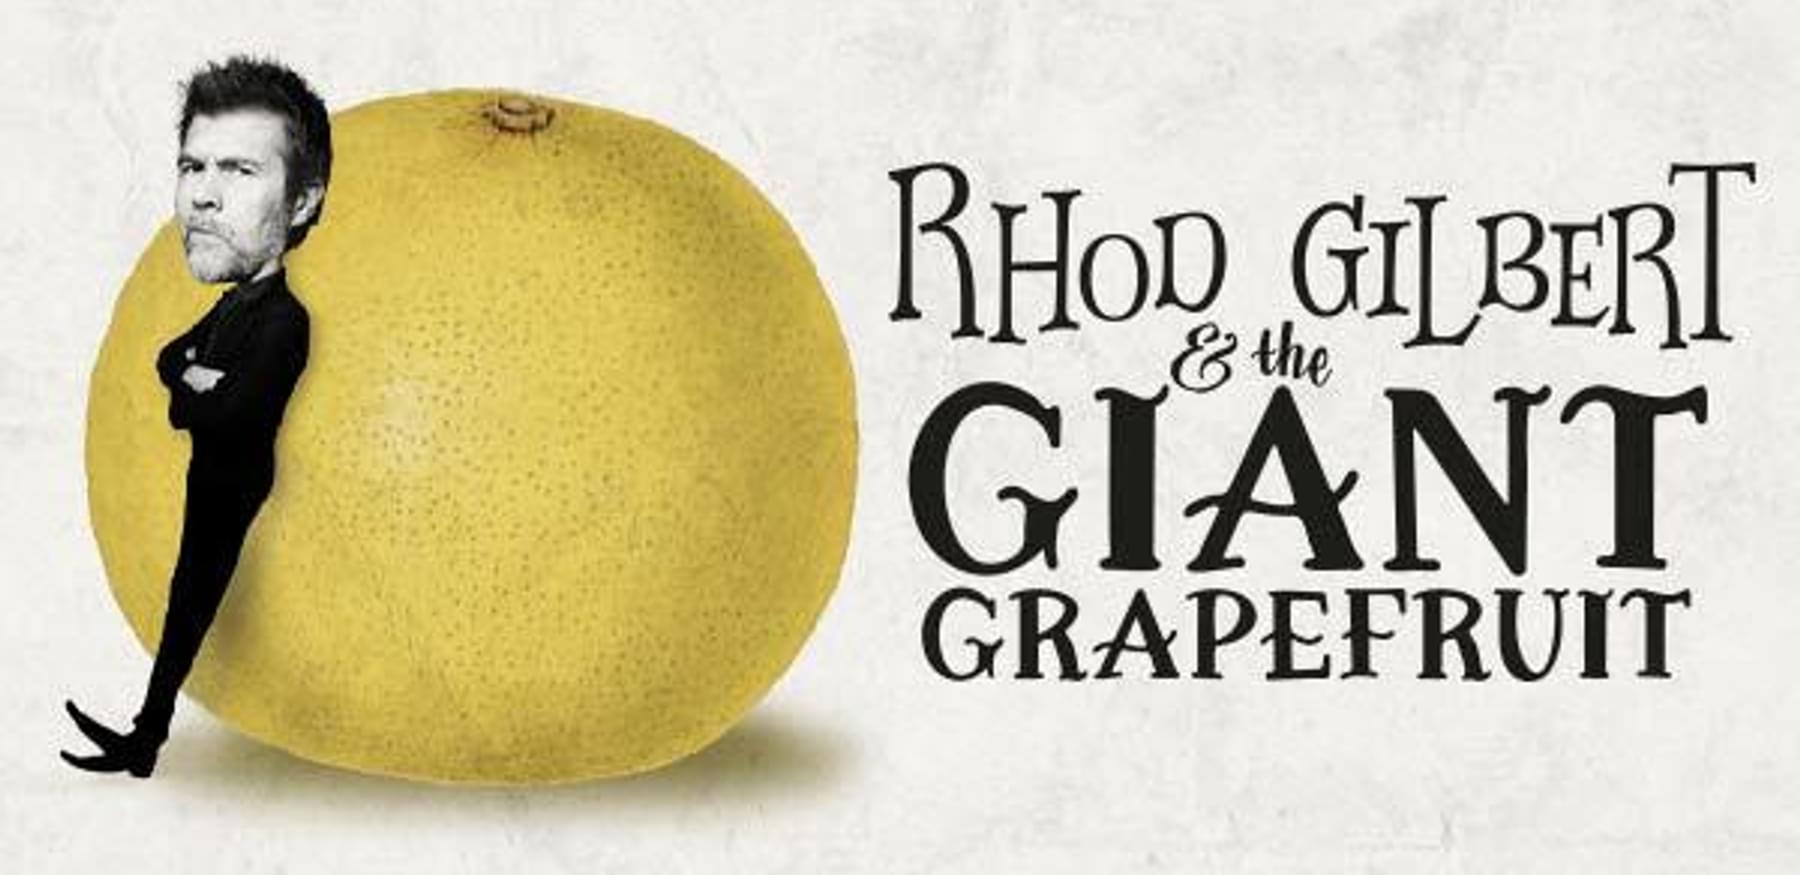 Rhod Gilbert Giant Grapefruit TM 600x300px